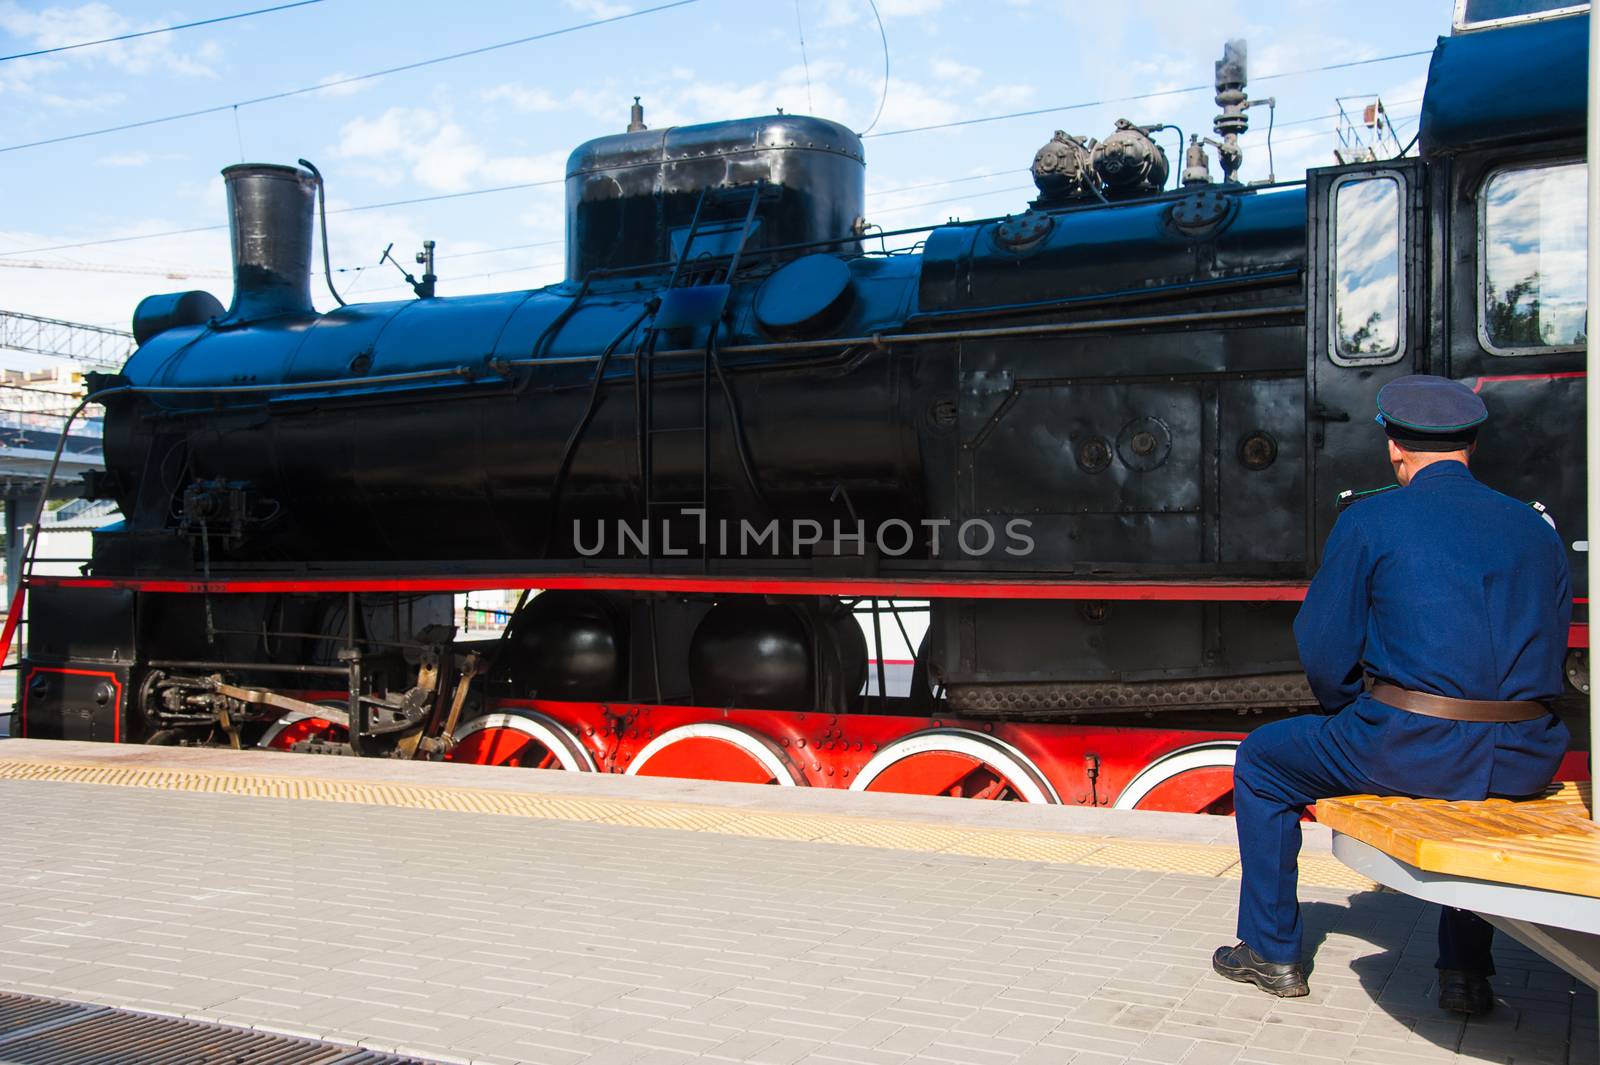 Vintage black steam locomotive. The train arrived at the station. Driver on the platform